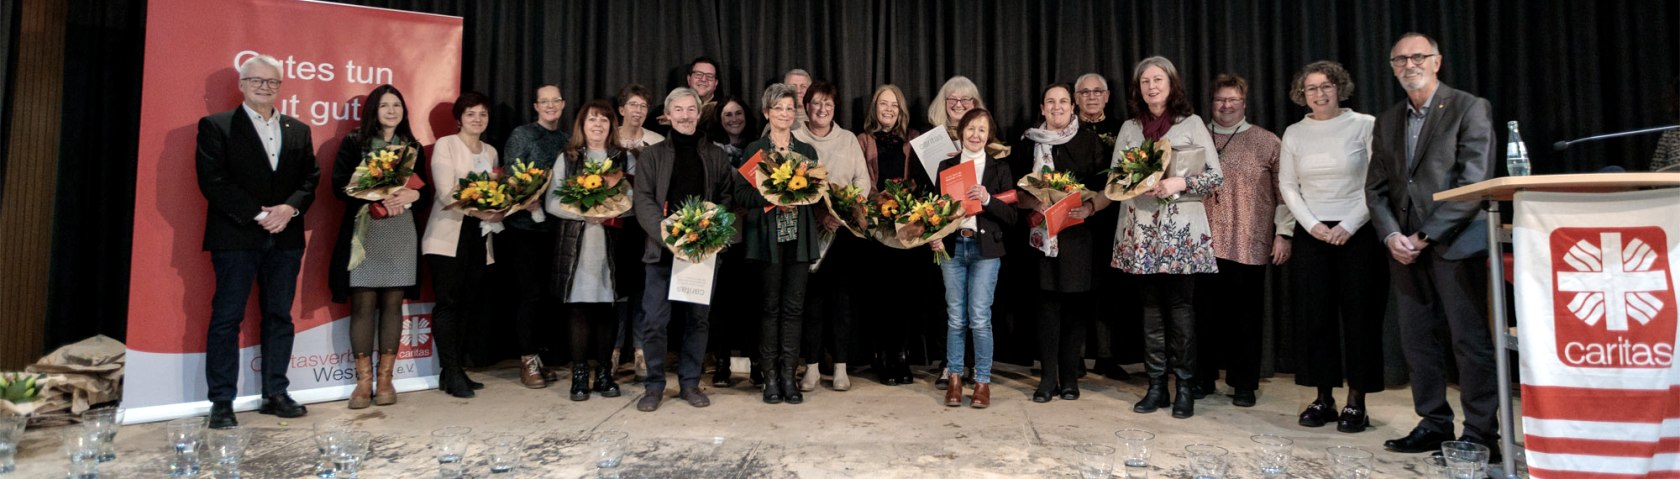 Jahresauftaktveranstaltung mit Ehrung langjähriger Mitarbeitenden, © Caritasverband Westeifel e.V.